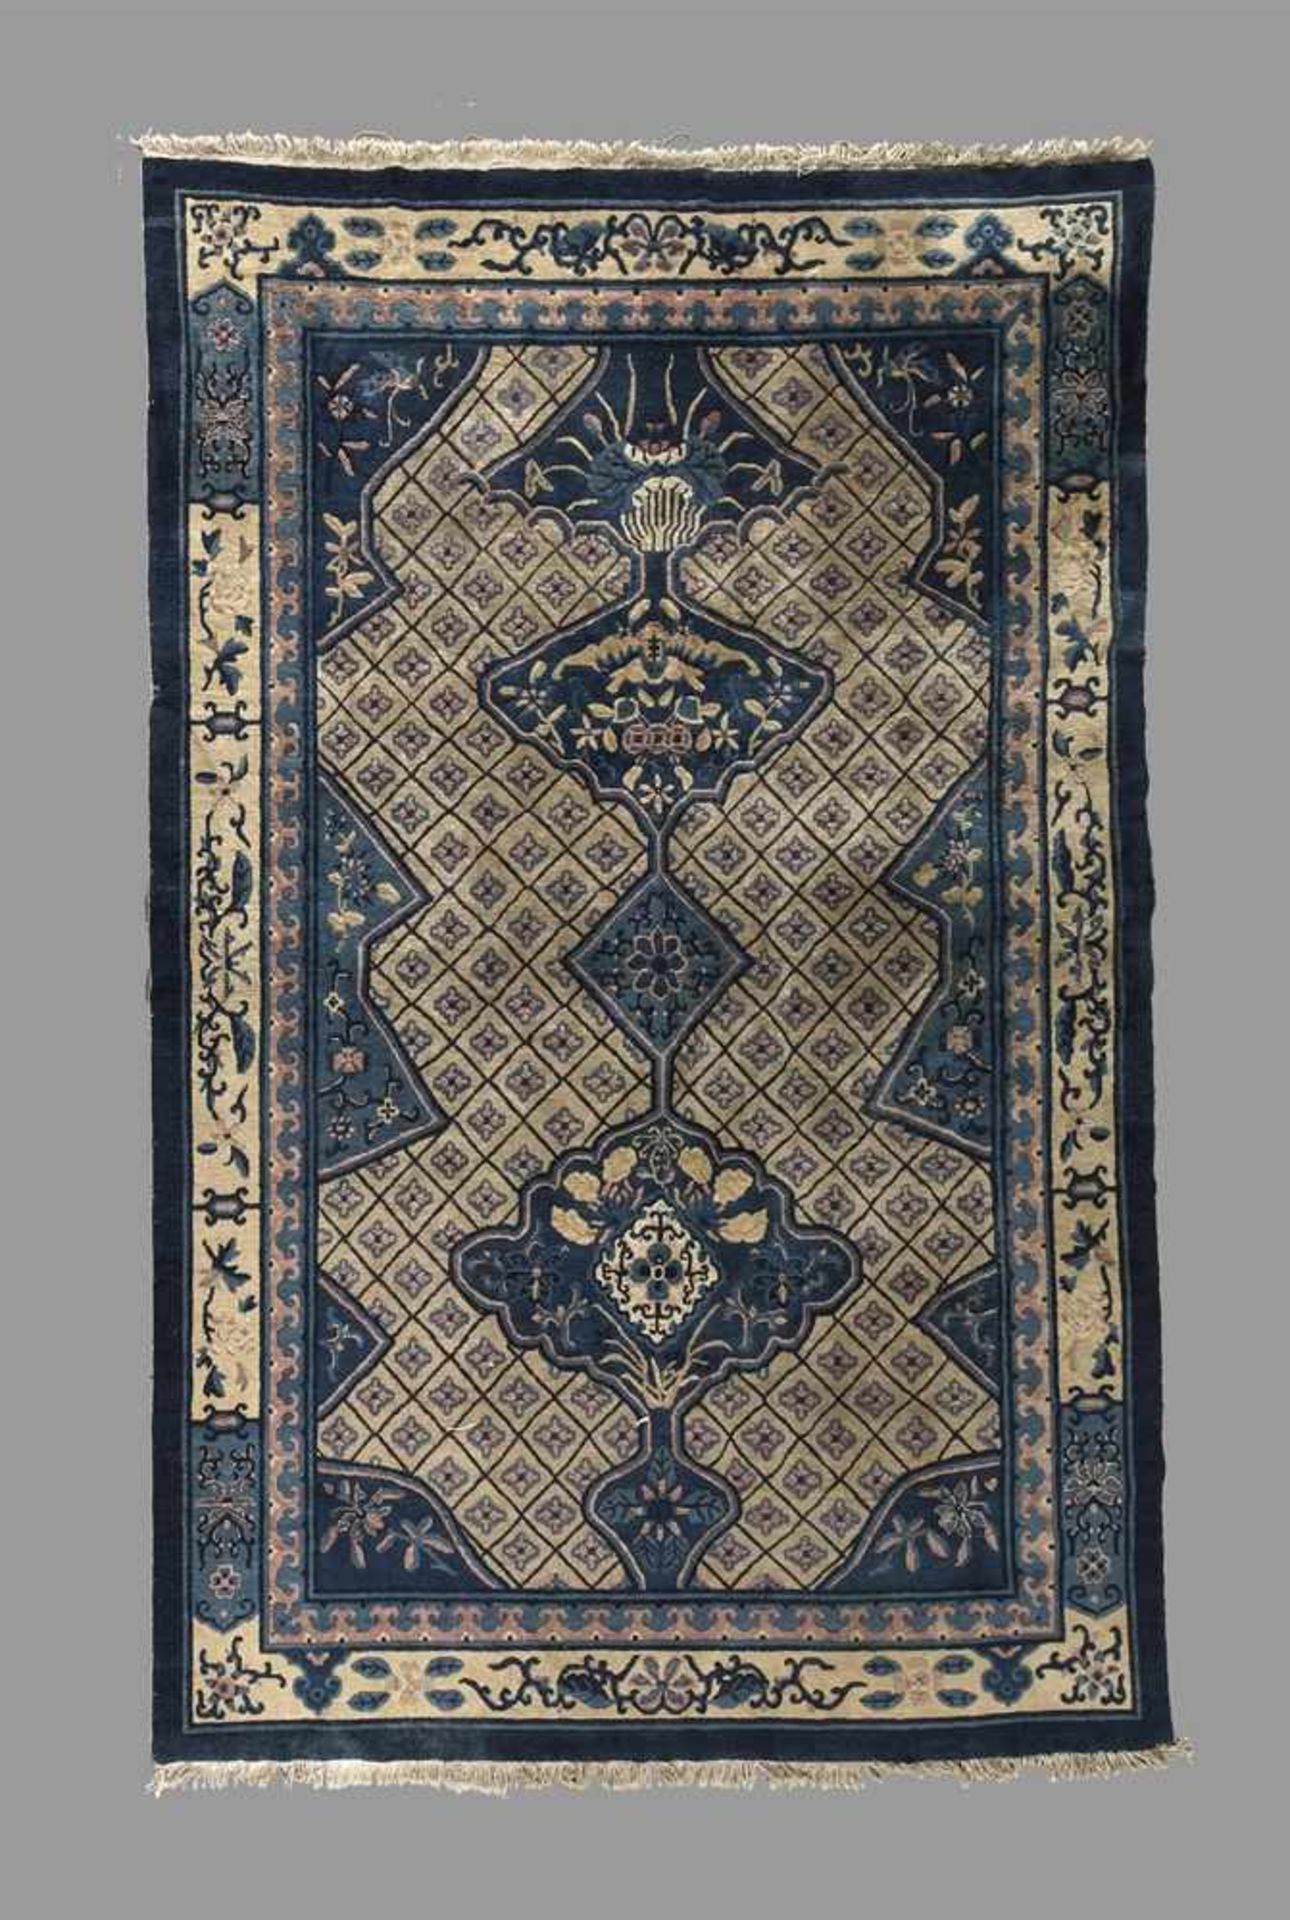 Teppich China um 1900, in Creme- und Blautönen gemustertes Modell, Flor sehr gut erhalten, leicht